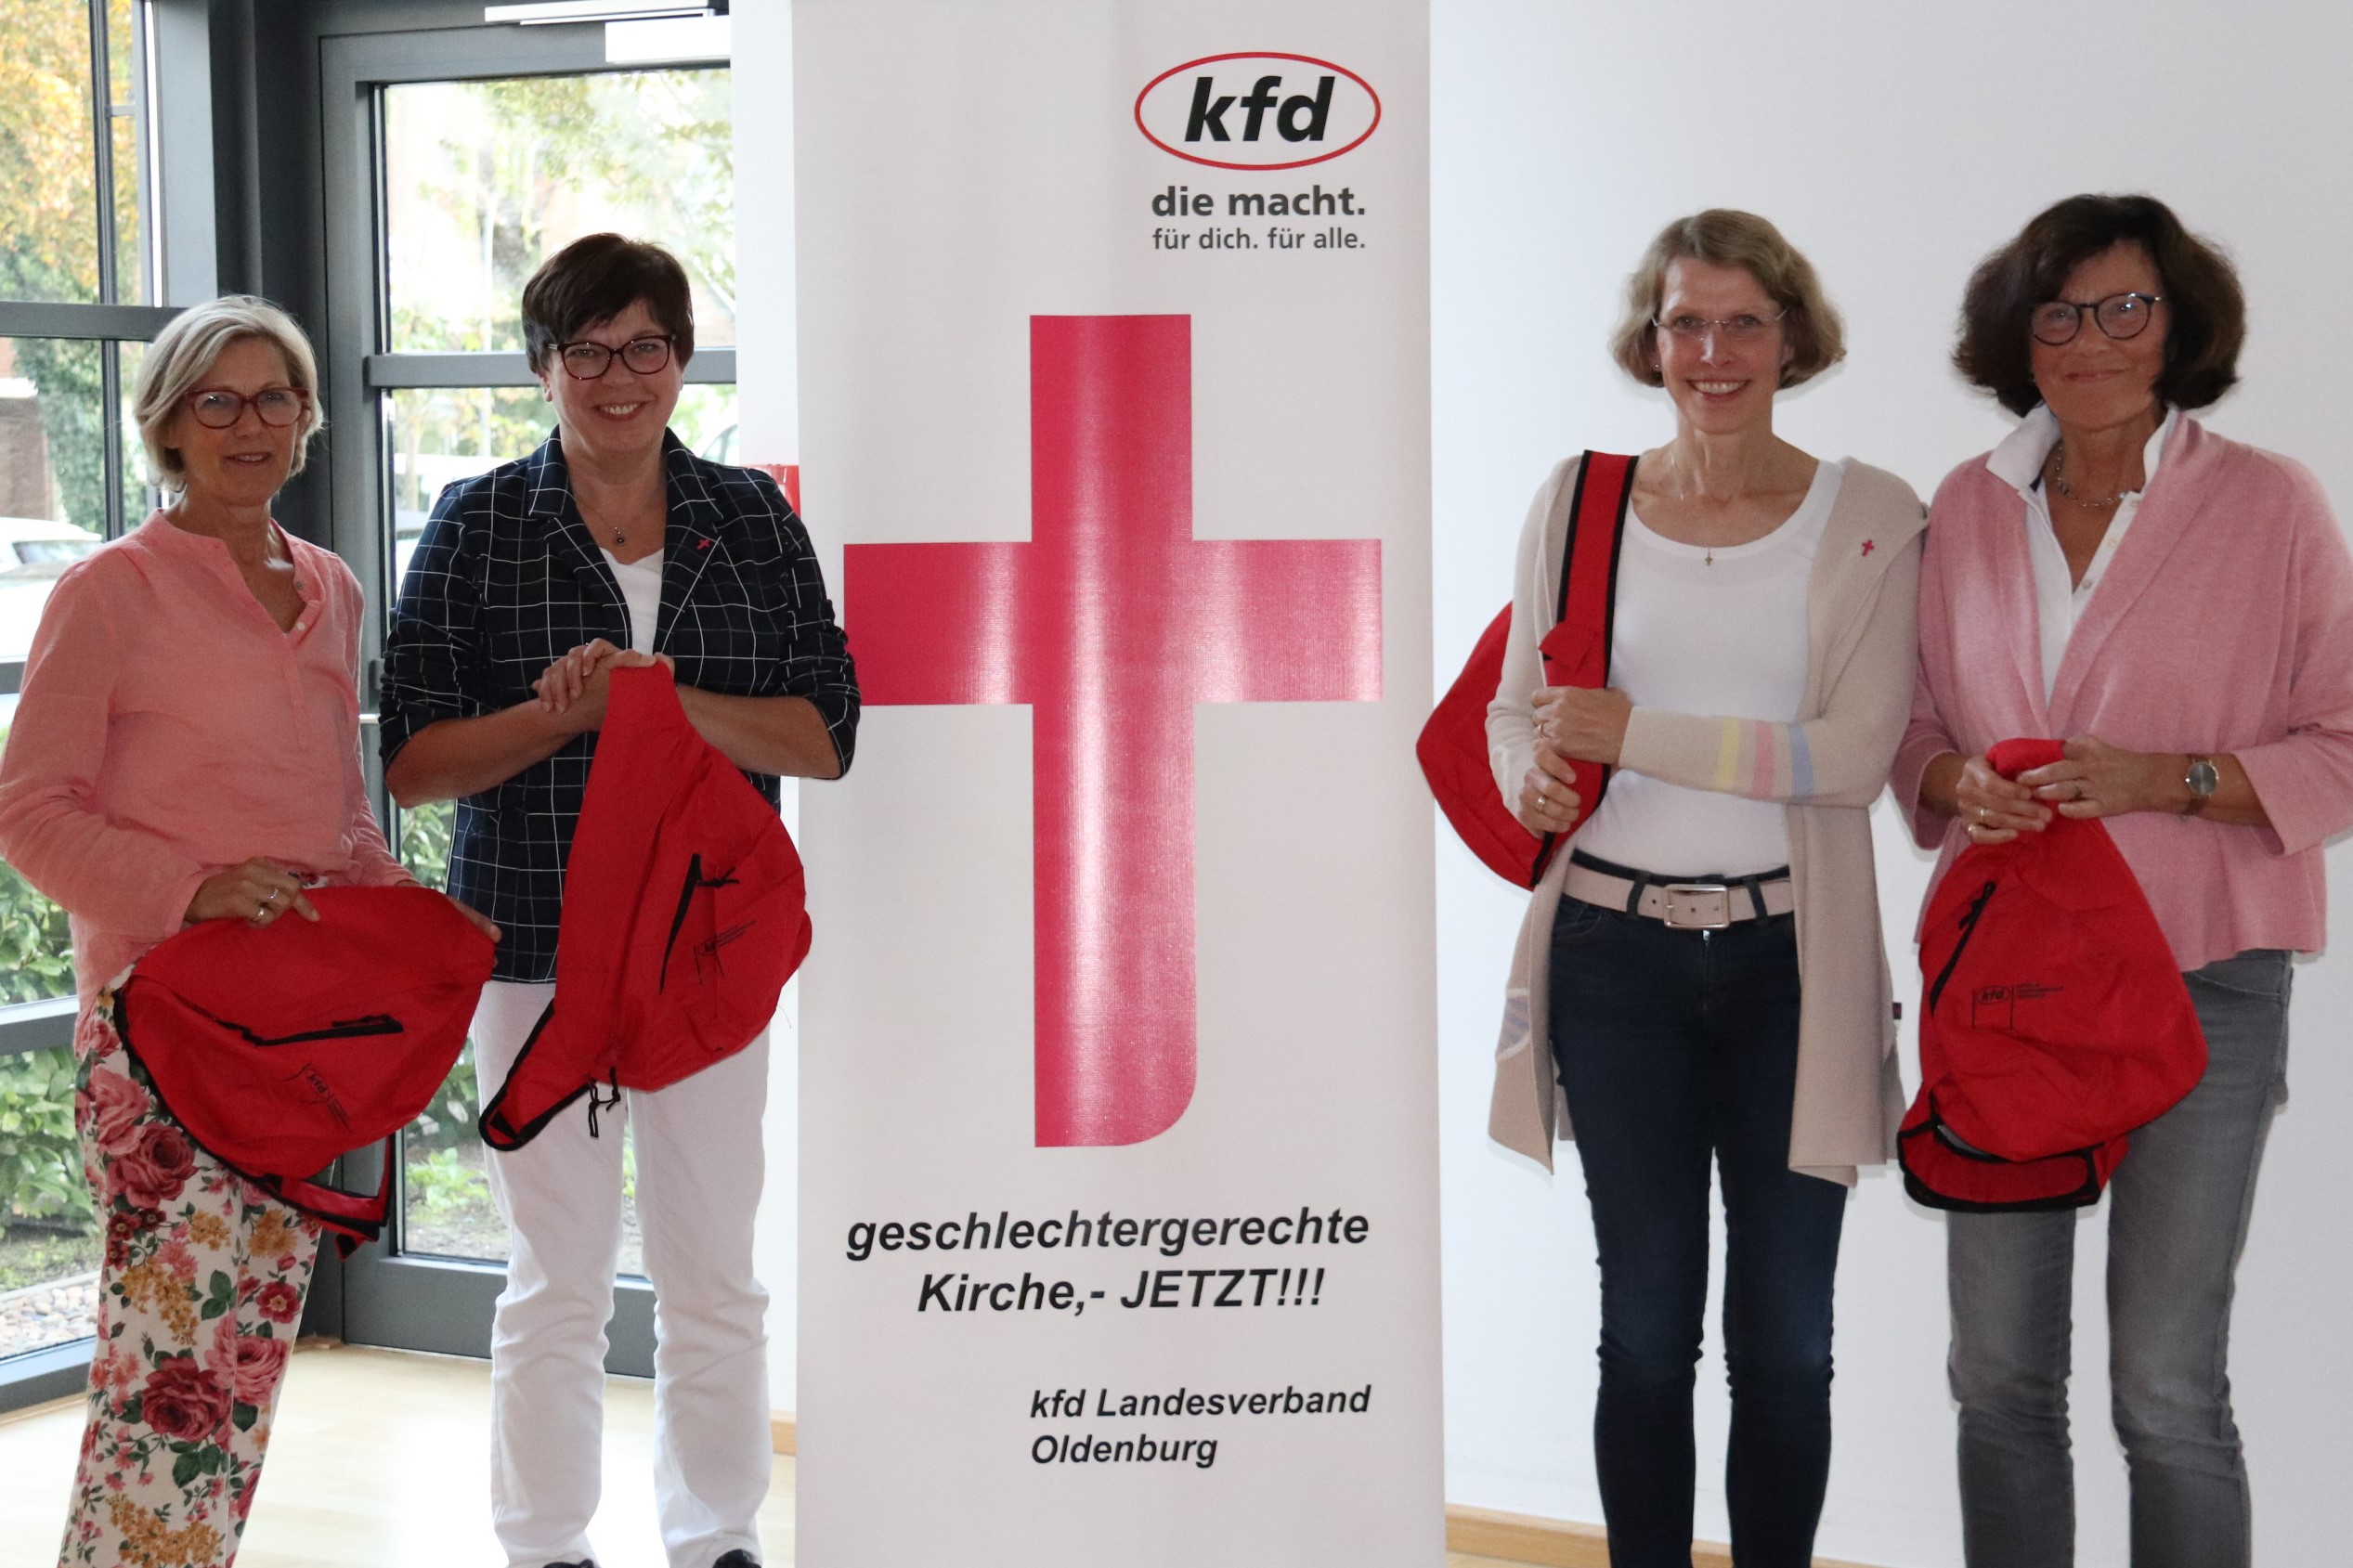 v.li: IlseNemann-Brak; Christa feldhaus; Andrea Wolking, Ursula Haskamp